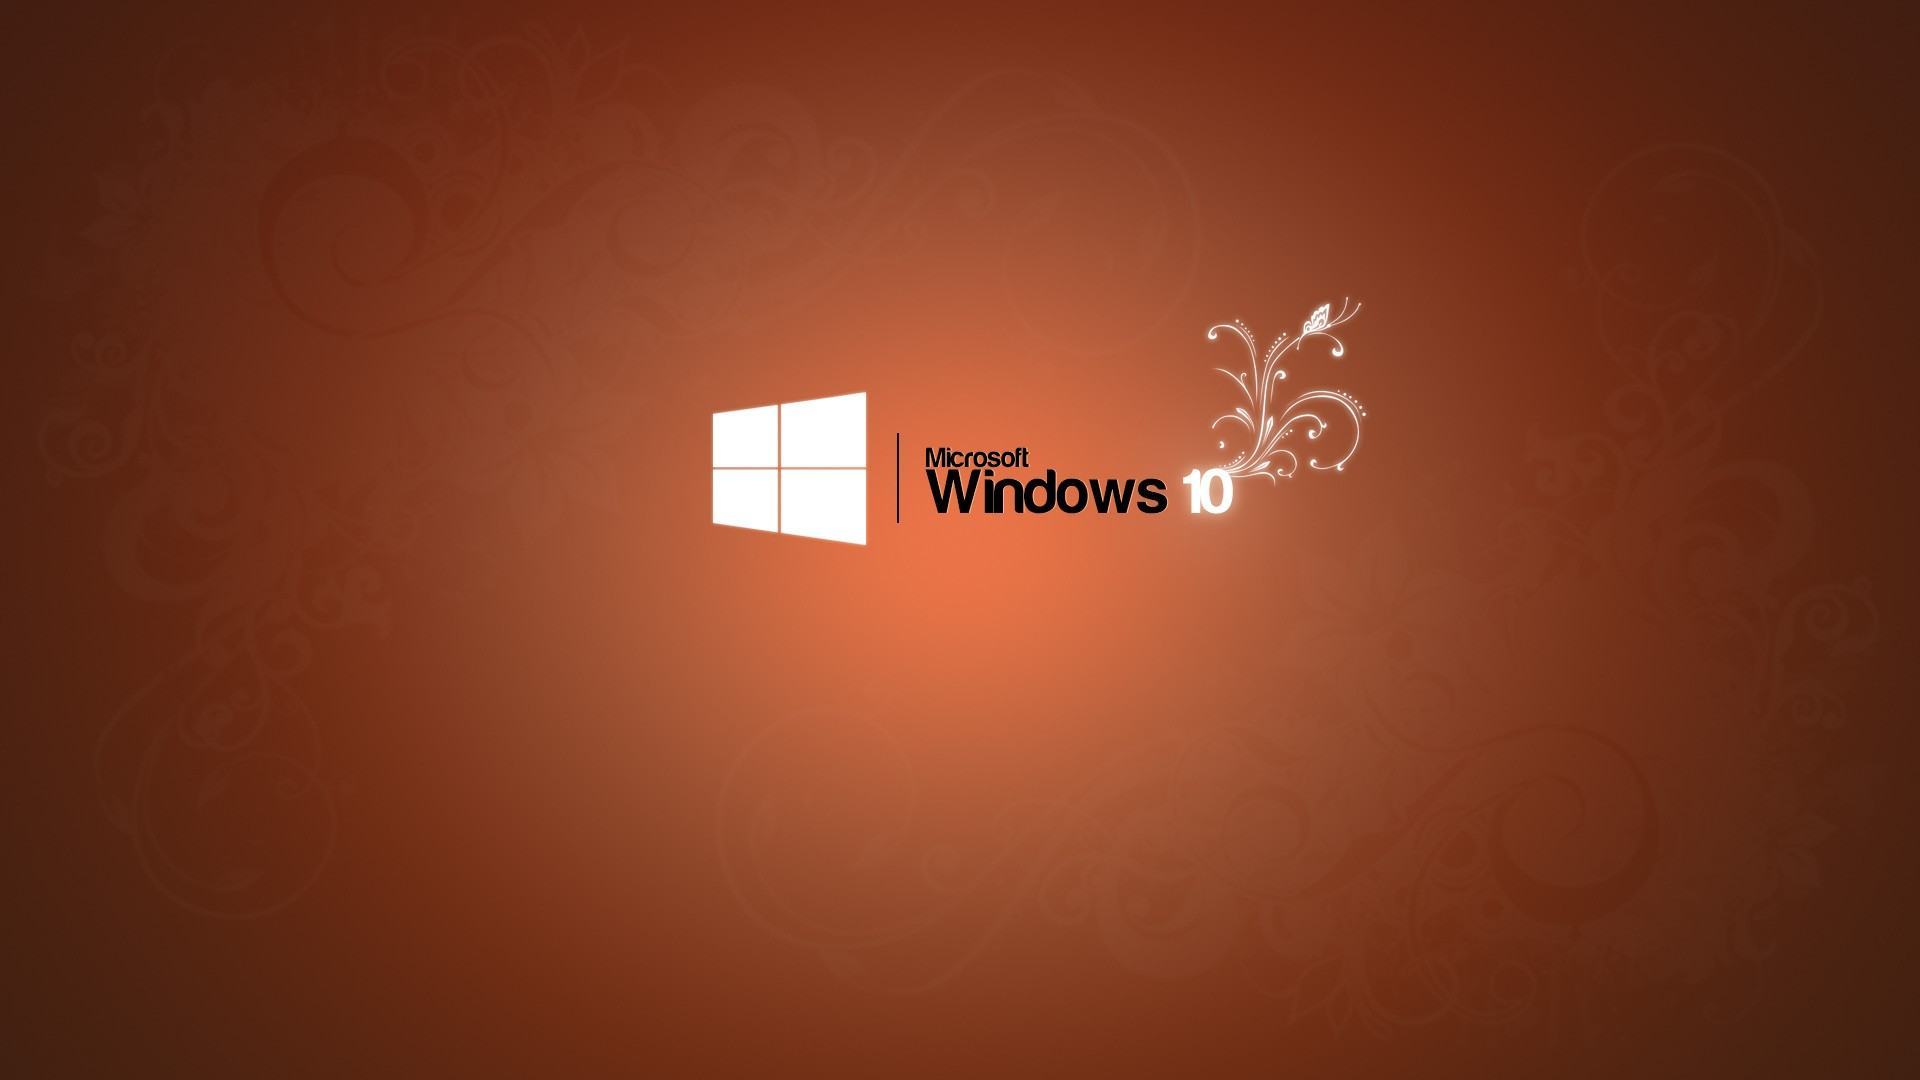 Hình nền windows 10 đơn giản